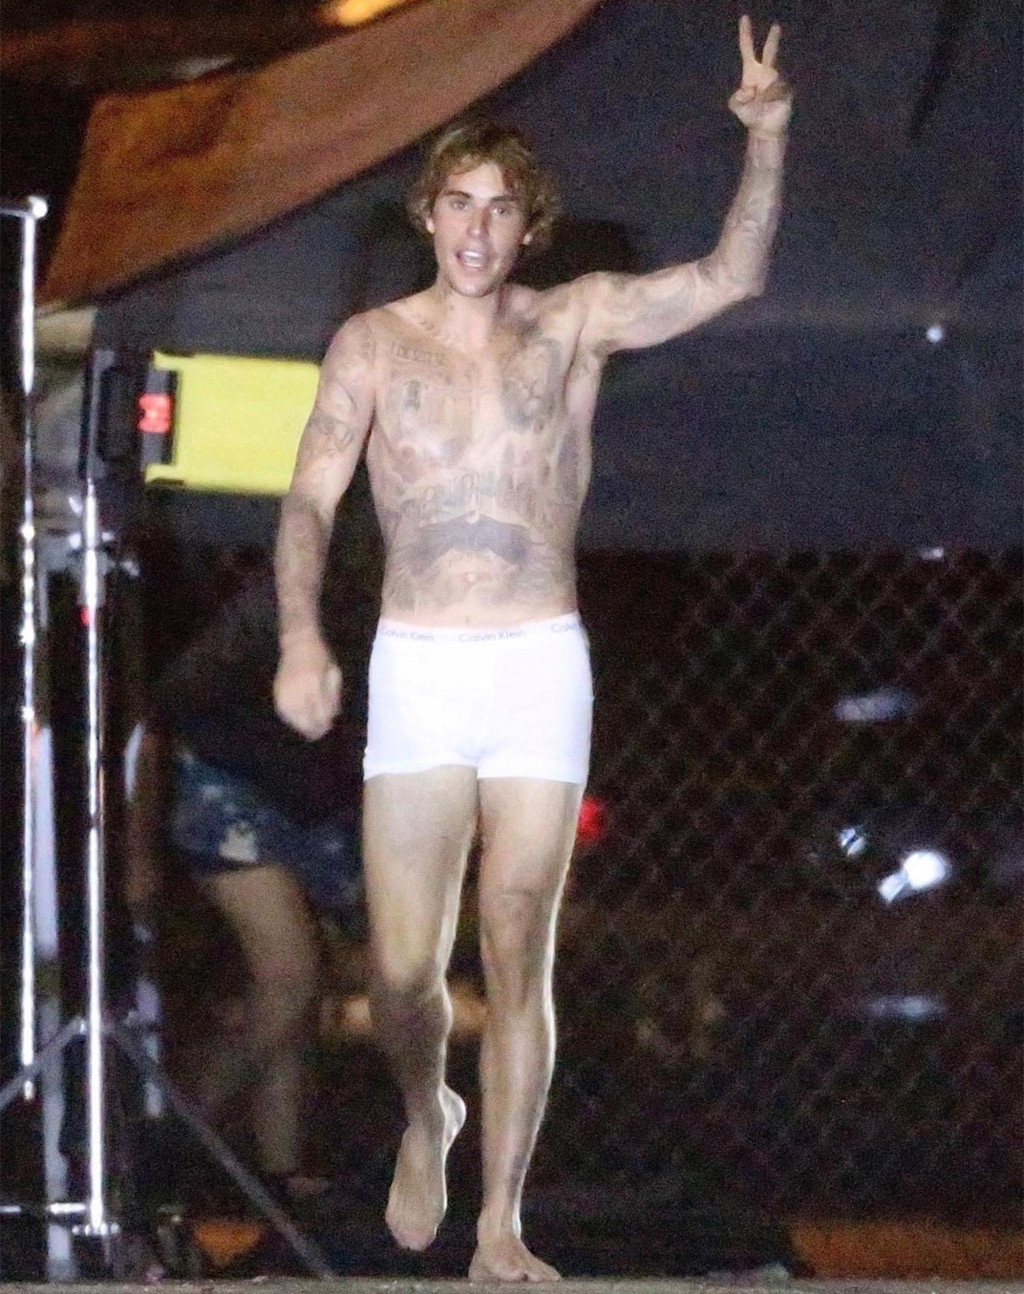 Lộ loạt ảnh Justin Bieber hớn hở, mặc độc mỗi quần lót khoe body săn chắc trên phim trường - Ảnh 4.